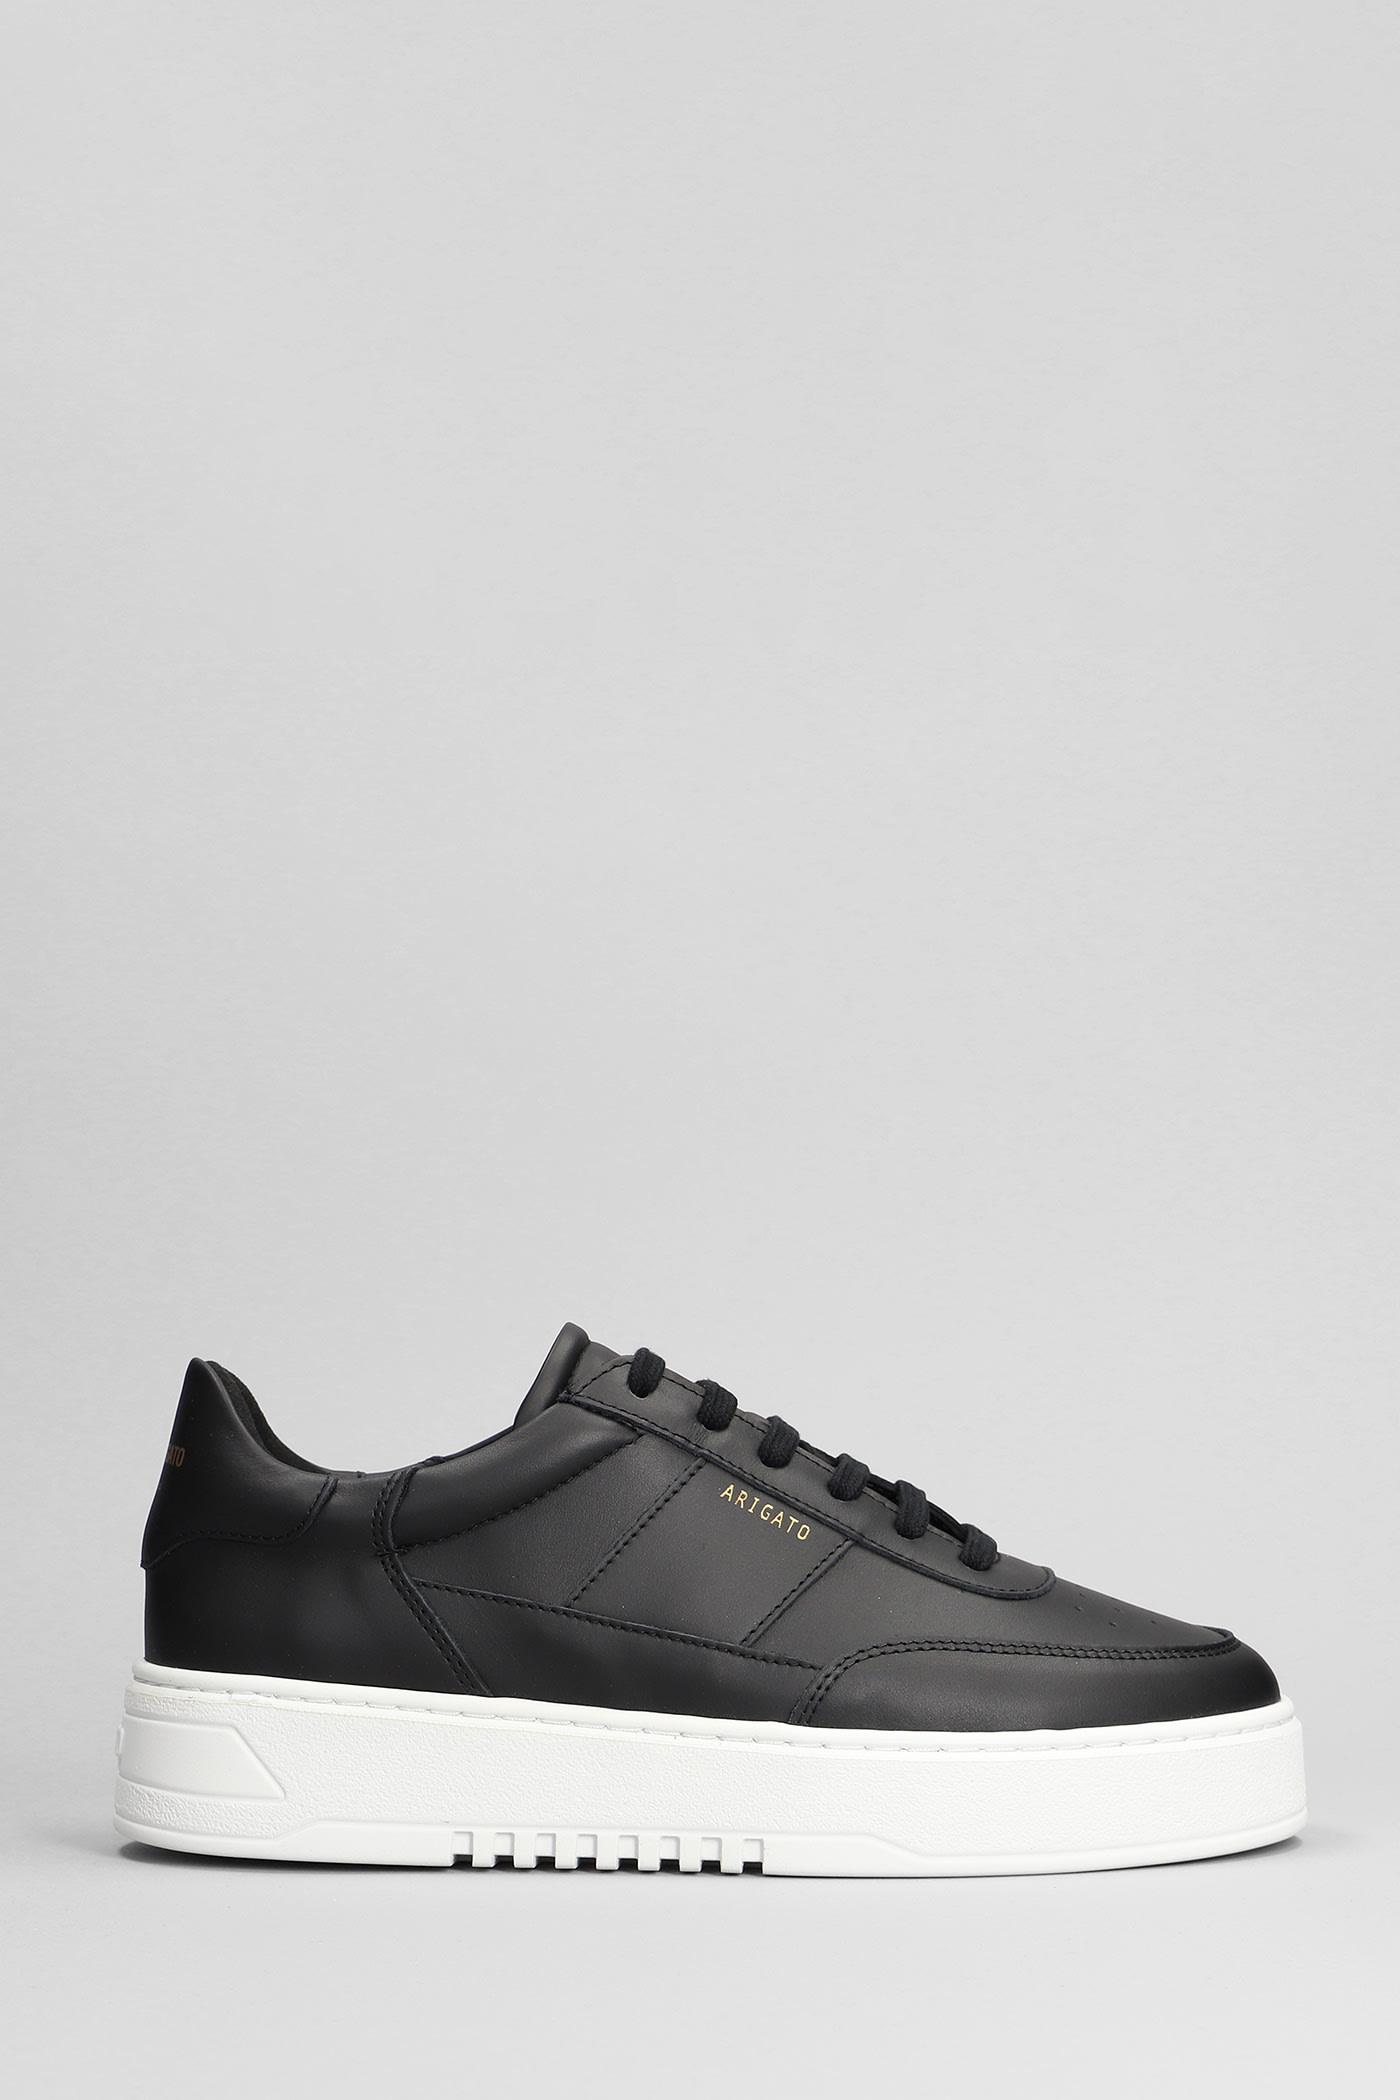 Orbit Sneakers In Black Leather